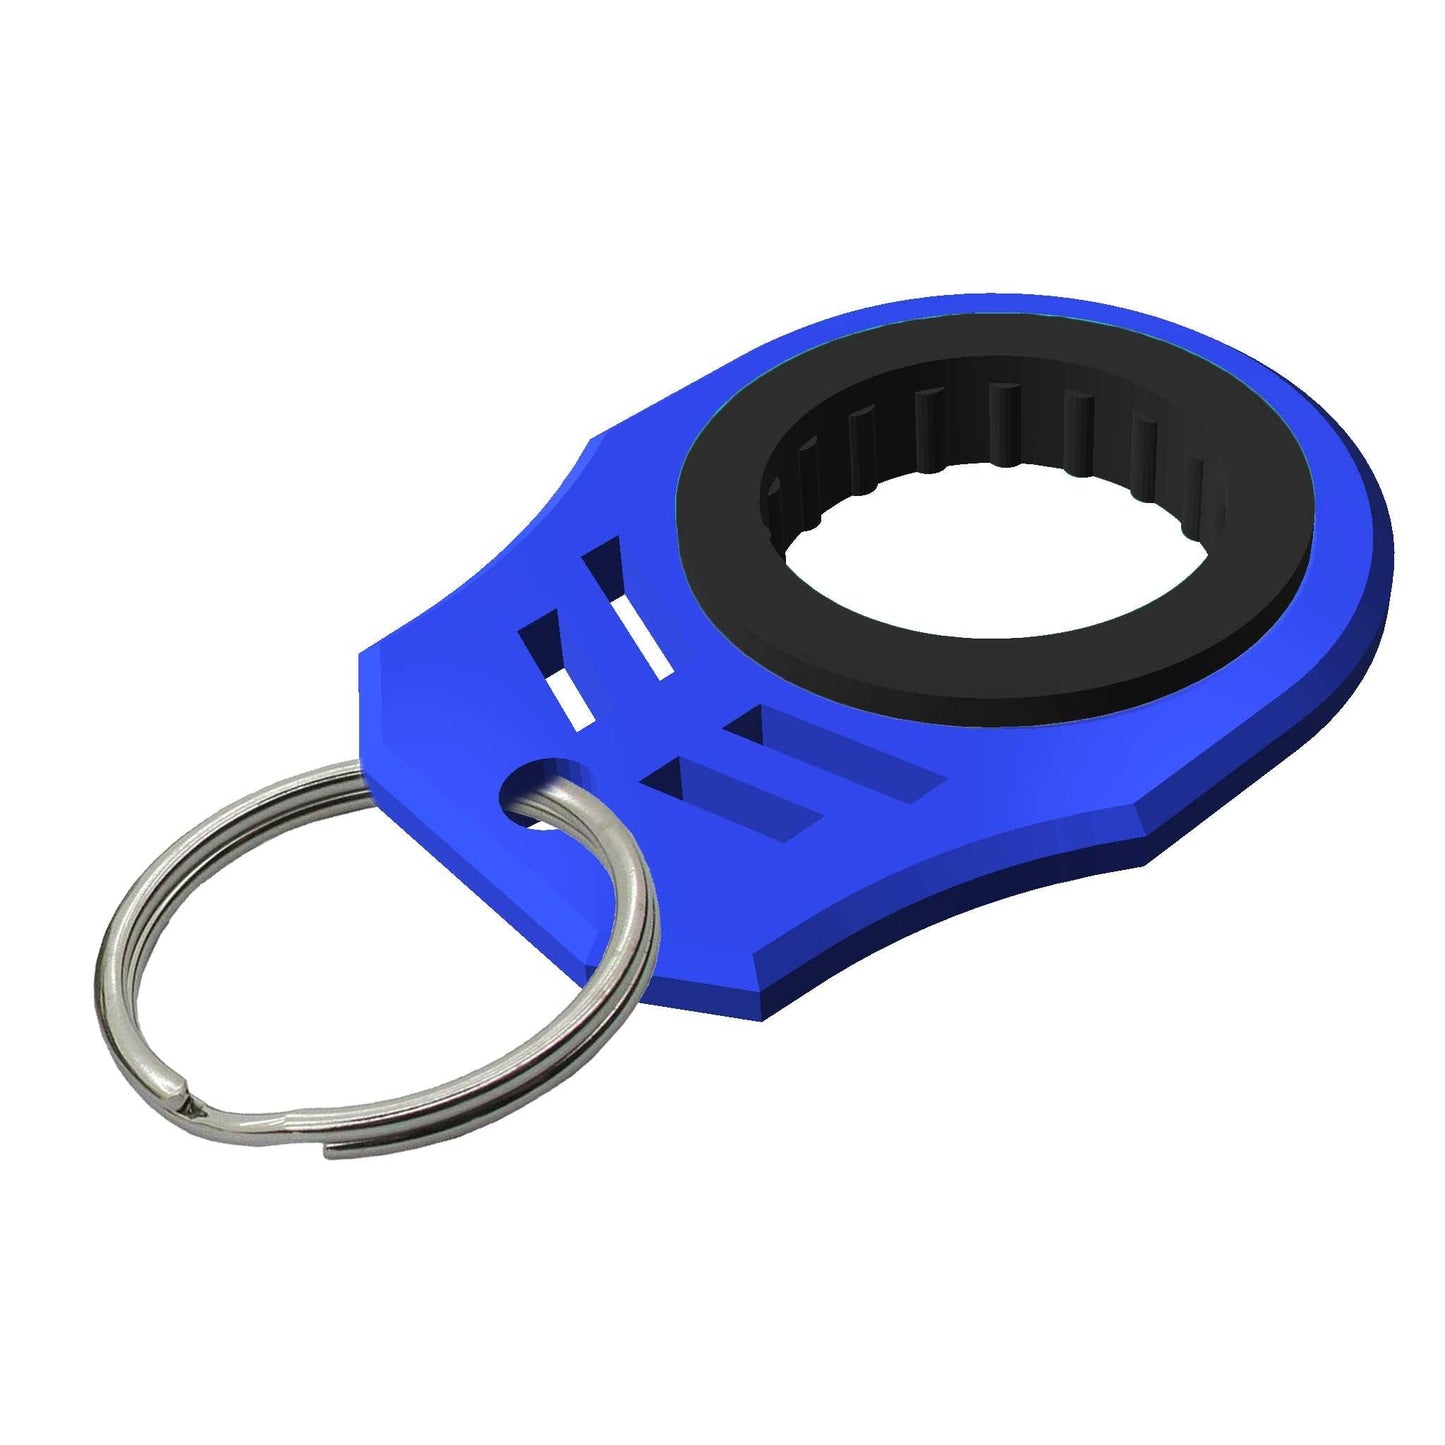 Pocket-sized Finger Spinner Keychain